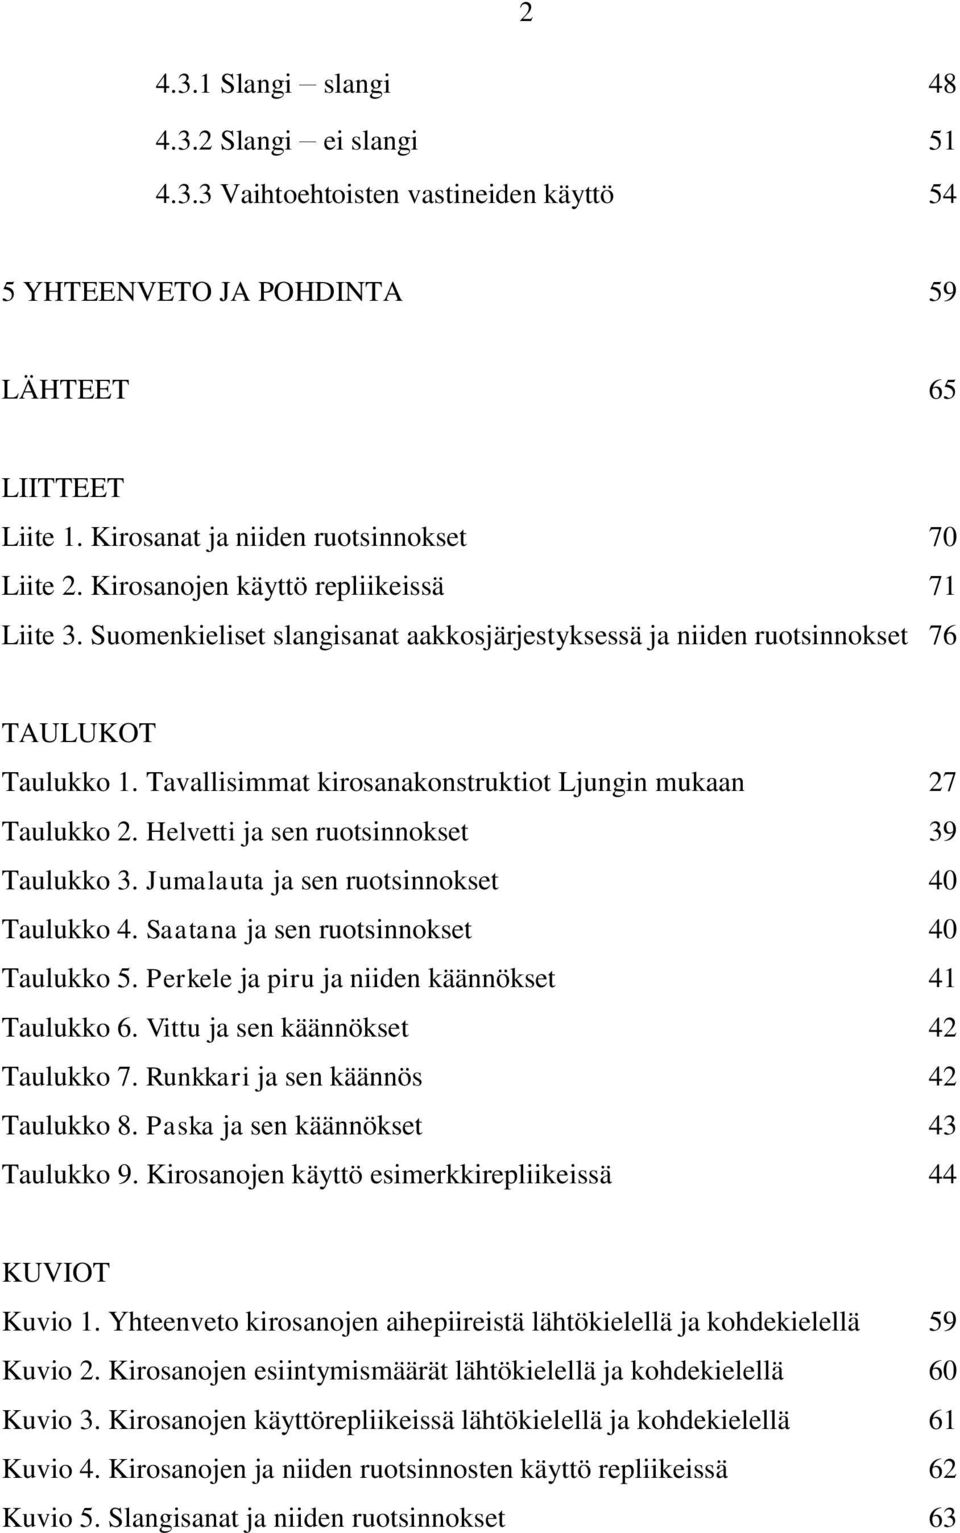 Tavallisimmat kirosanakonstruktiot Ljungin mukaan 27 Taulukko 2. Helvetti ja sen ruotsinnokset 39 Taulukko 3. Jumalauta ja sen ruotsinnokset 40 Taulukko 4. Saatana ja sen ruotsinnokset 40 Taulukko 5.